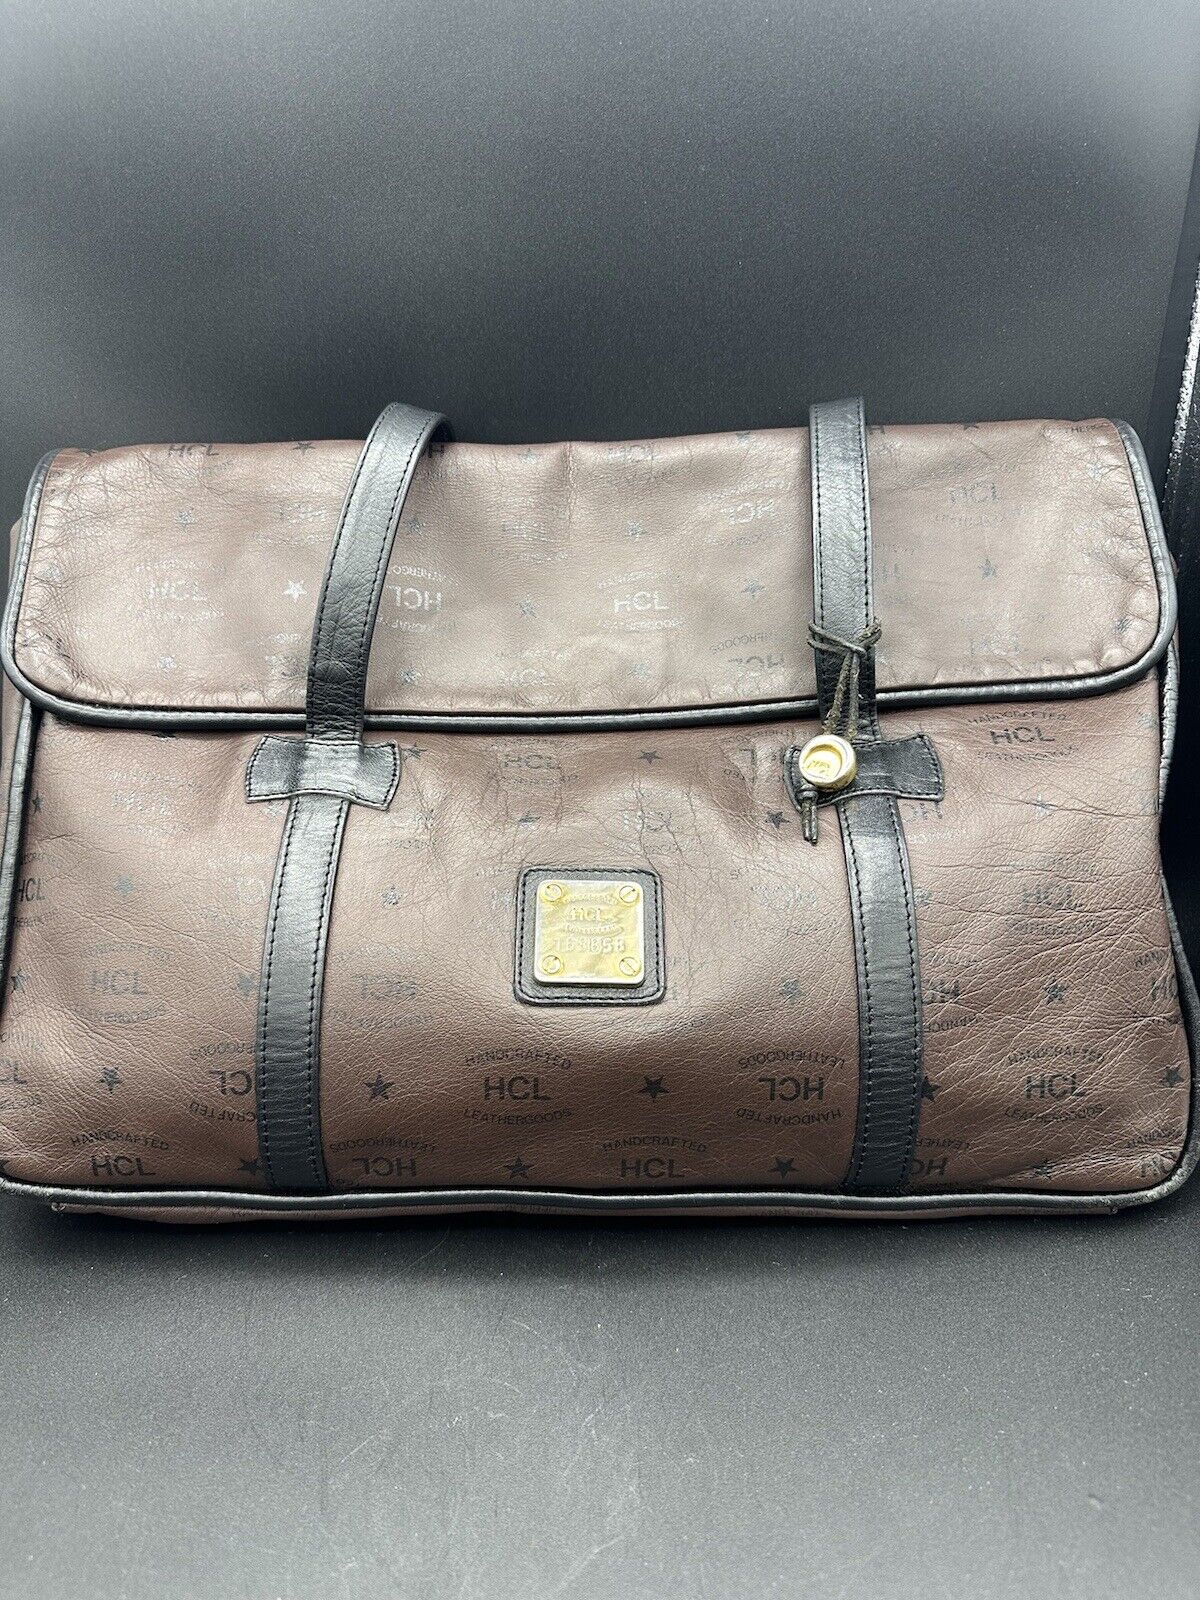 Vintage HCL WEST GERMANY Messenger Computer Bag Brown Black Soft Leather16 X 11